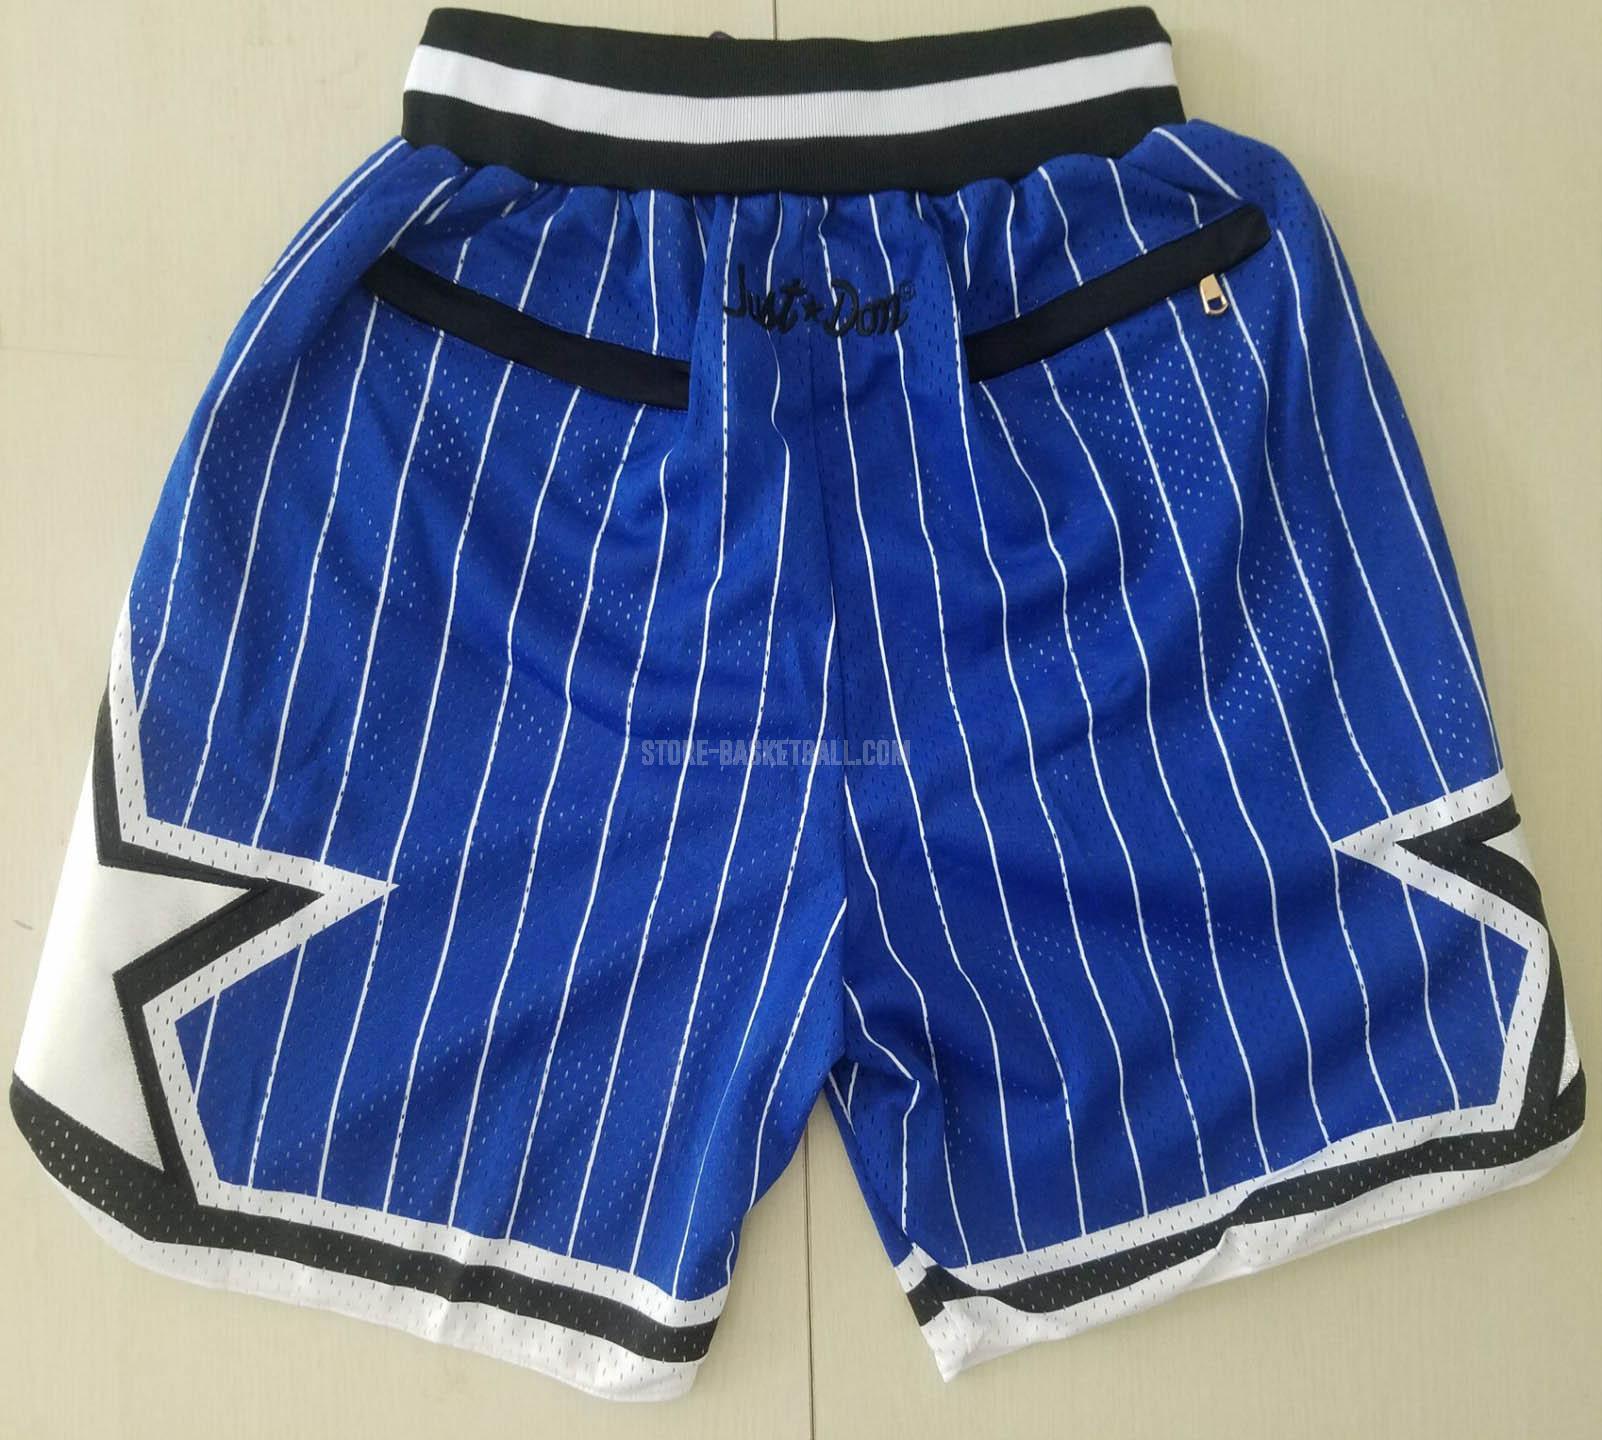 Top selling cheap orlando magic blue just don pockett nba shorts